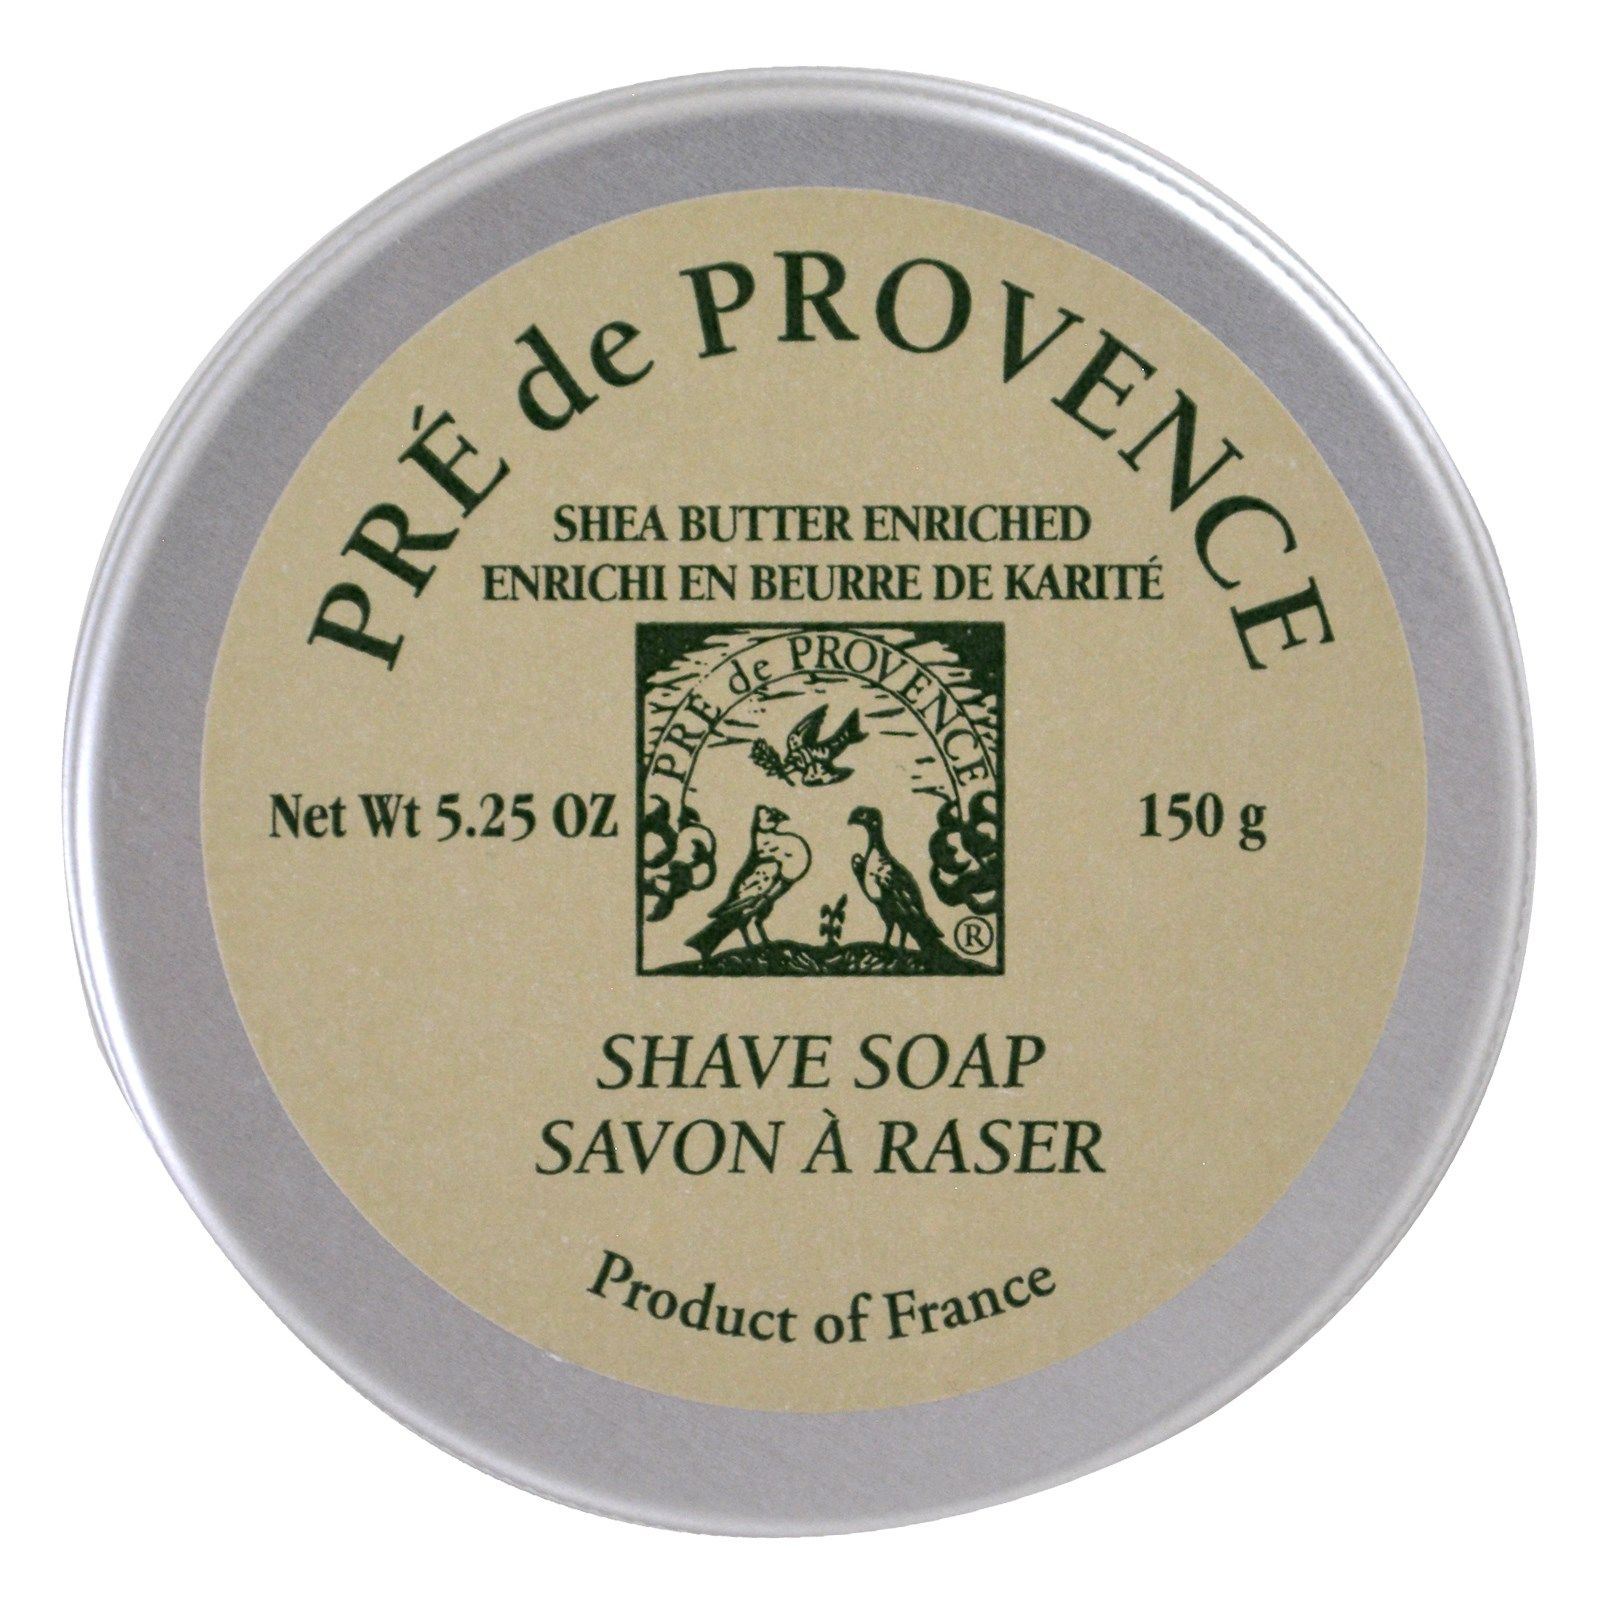 Pre de Provence, Shave Soap, Shea Butter Enriched, European Soaps, LLC